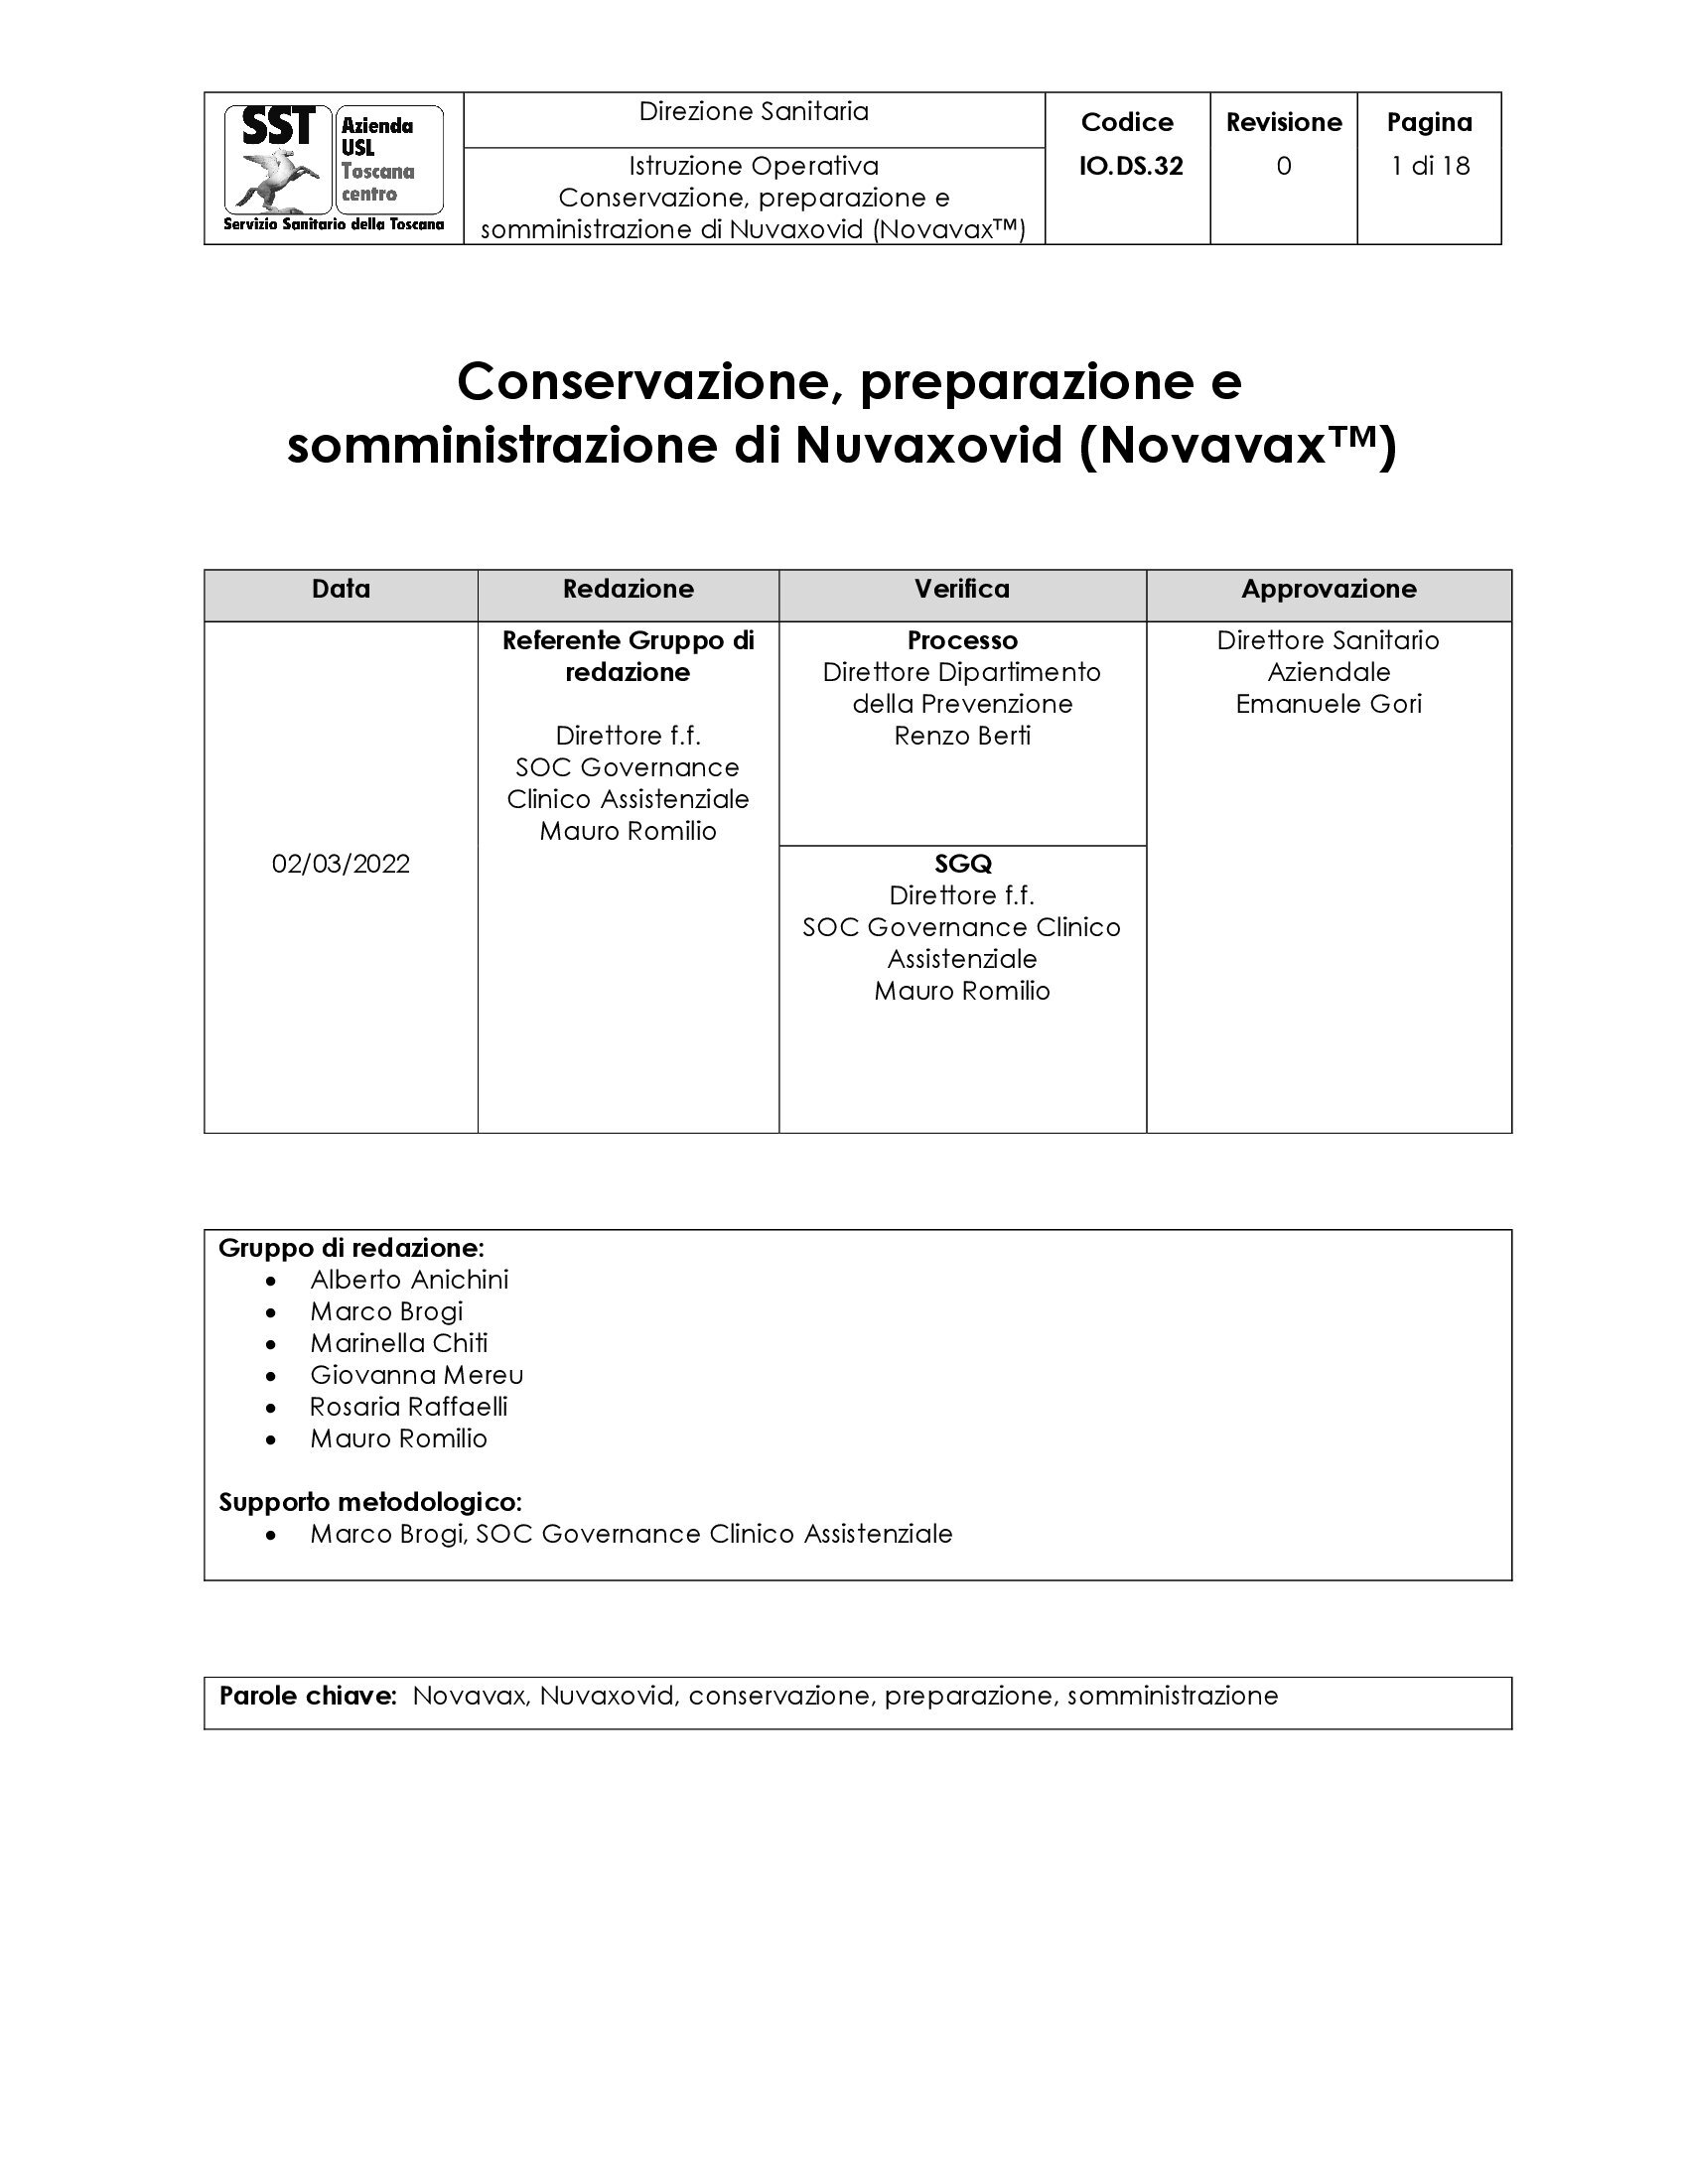 IO.DS.32: Conservazione, preparazione e somministrazione di Nuvaxovid (Novavax™)